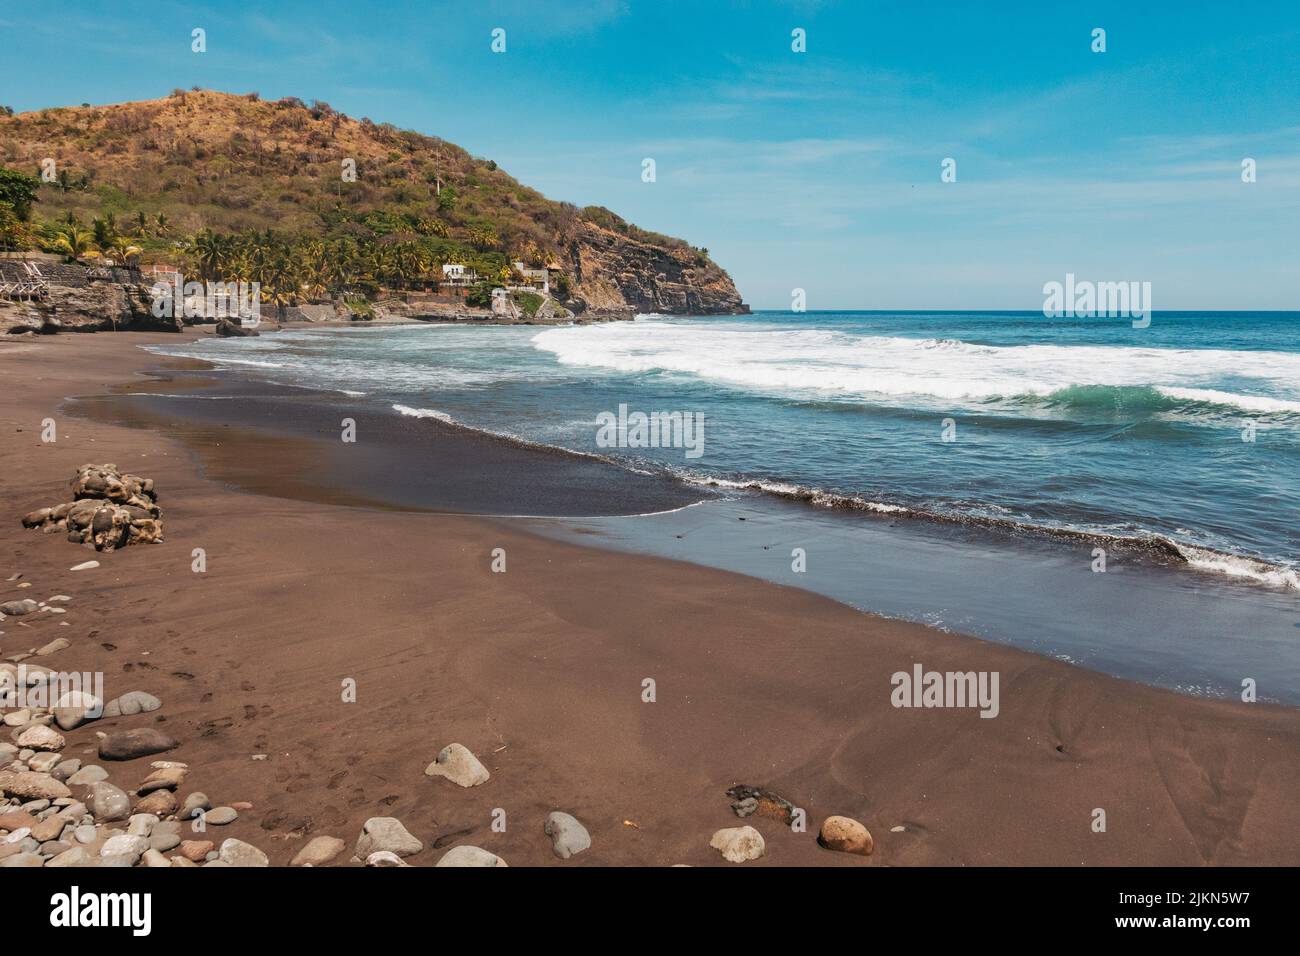 La plage d'El Zonte, également connue sous le nom de Bitcoin Beach, sur la côte Pacifique d'El Salvador Banque D'Images